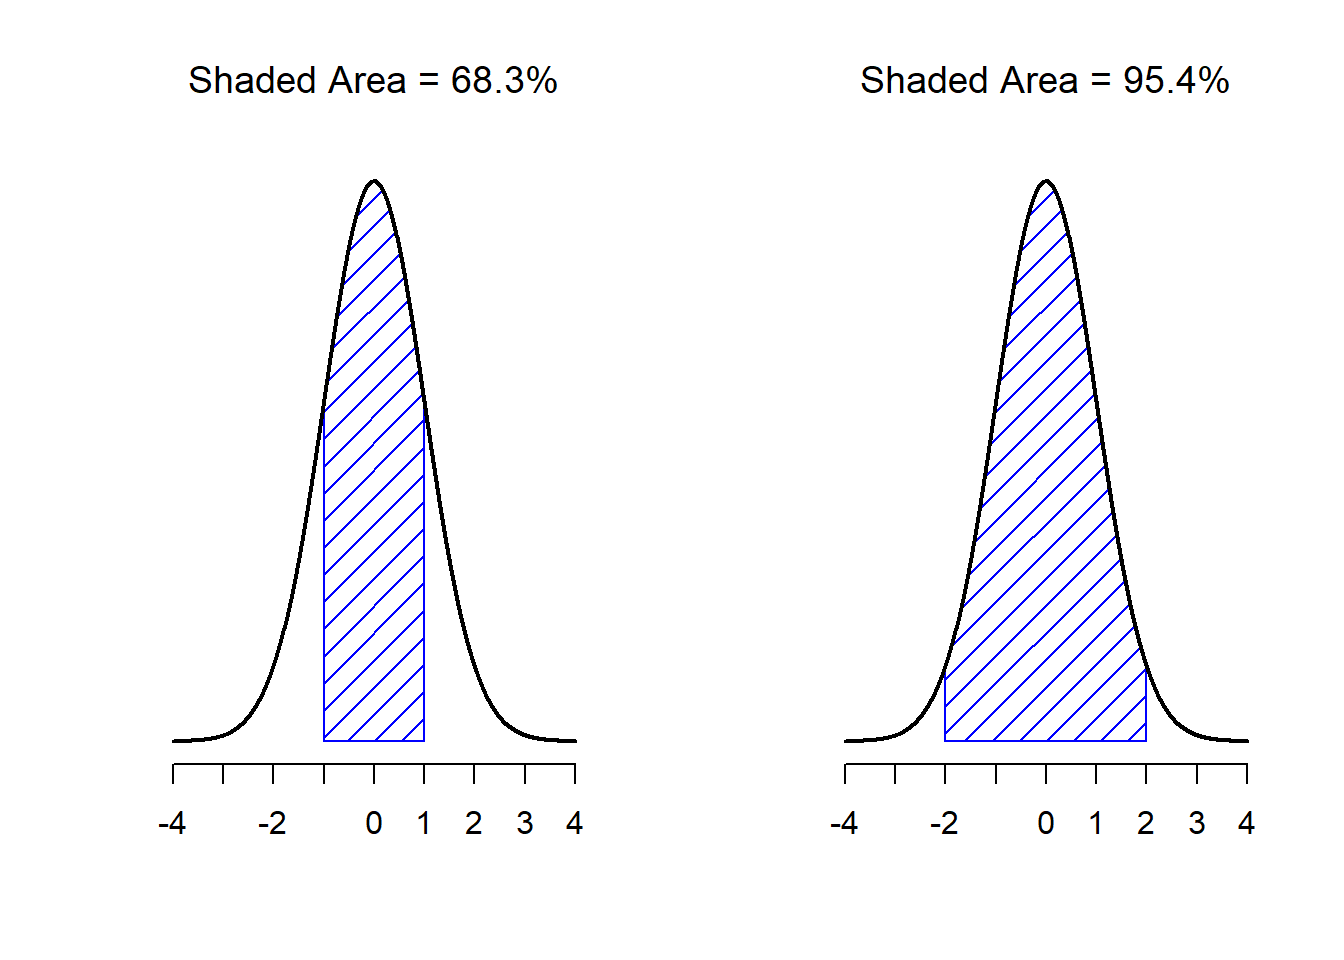 El área bajo la curva indica la probabilidad de que una observación se encuentre dentro de un rango determinado. Las línea continua traza una distribución normal con media $mu=0$ y desviación estándar $sigma=1$. El área sombreada ilustra el 'área bajo la curva' para dos casos importantes. En el panel a, podemos ver que hay es un  68.3% de probabilidad de que una observación caiga dentro de 1 desviación estándar sobre la media. En el panel b, vemos que existe una probabilidad del 95.4% de que una observación se encuentre dentro de 2 desviaciones estándar sobre la media.